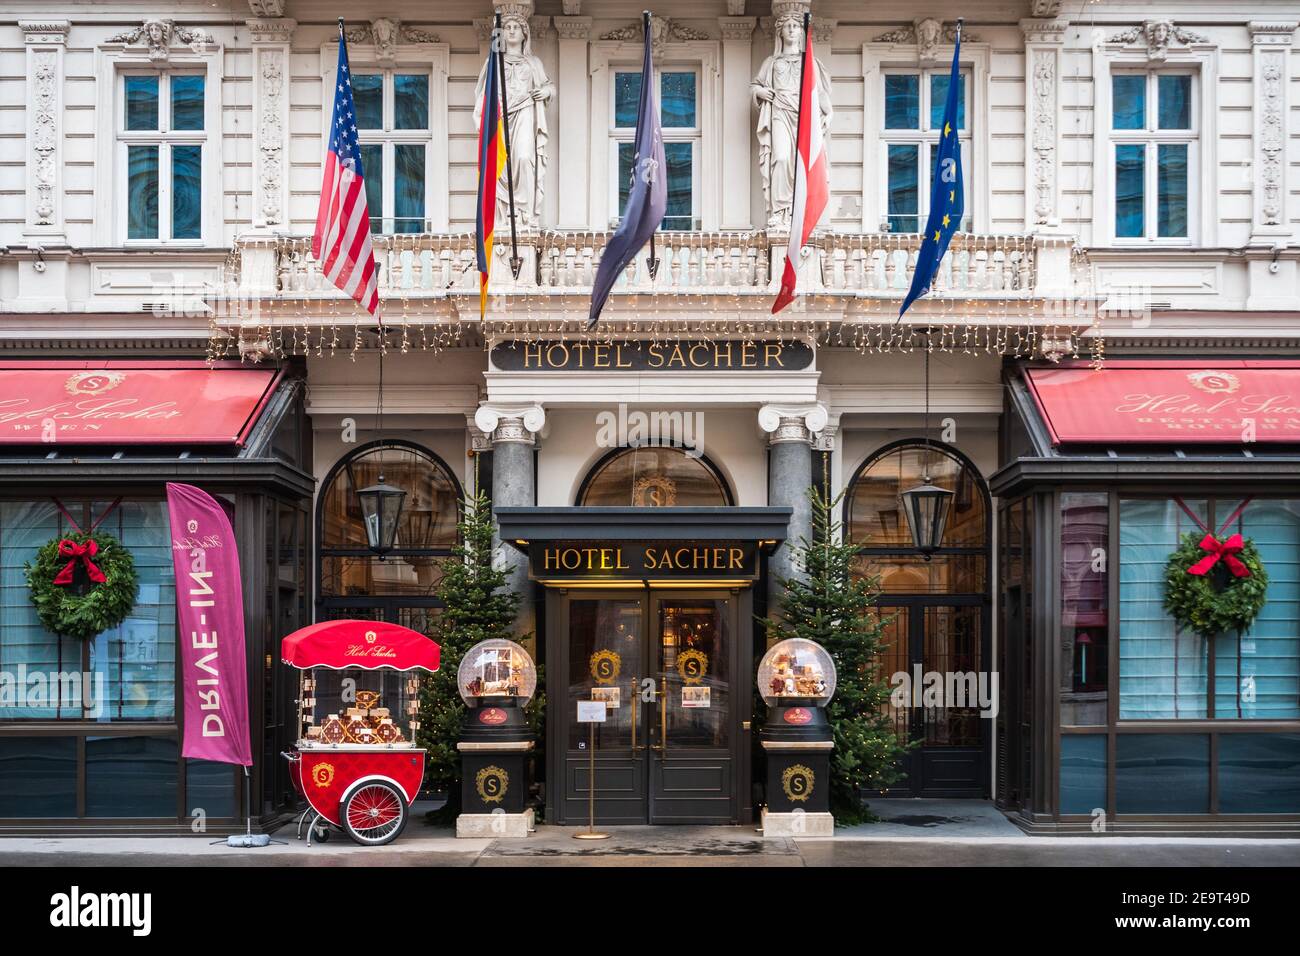 Vienne, Autriche - Decembter 19 2020: Entrée de l'hôtel Sacher, célèbre pour son gâteau au chocolat. Banque D'Images